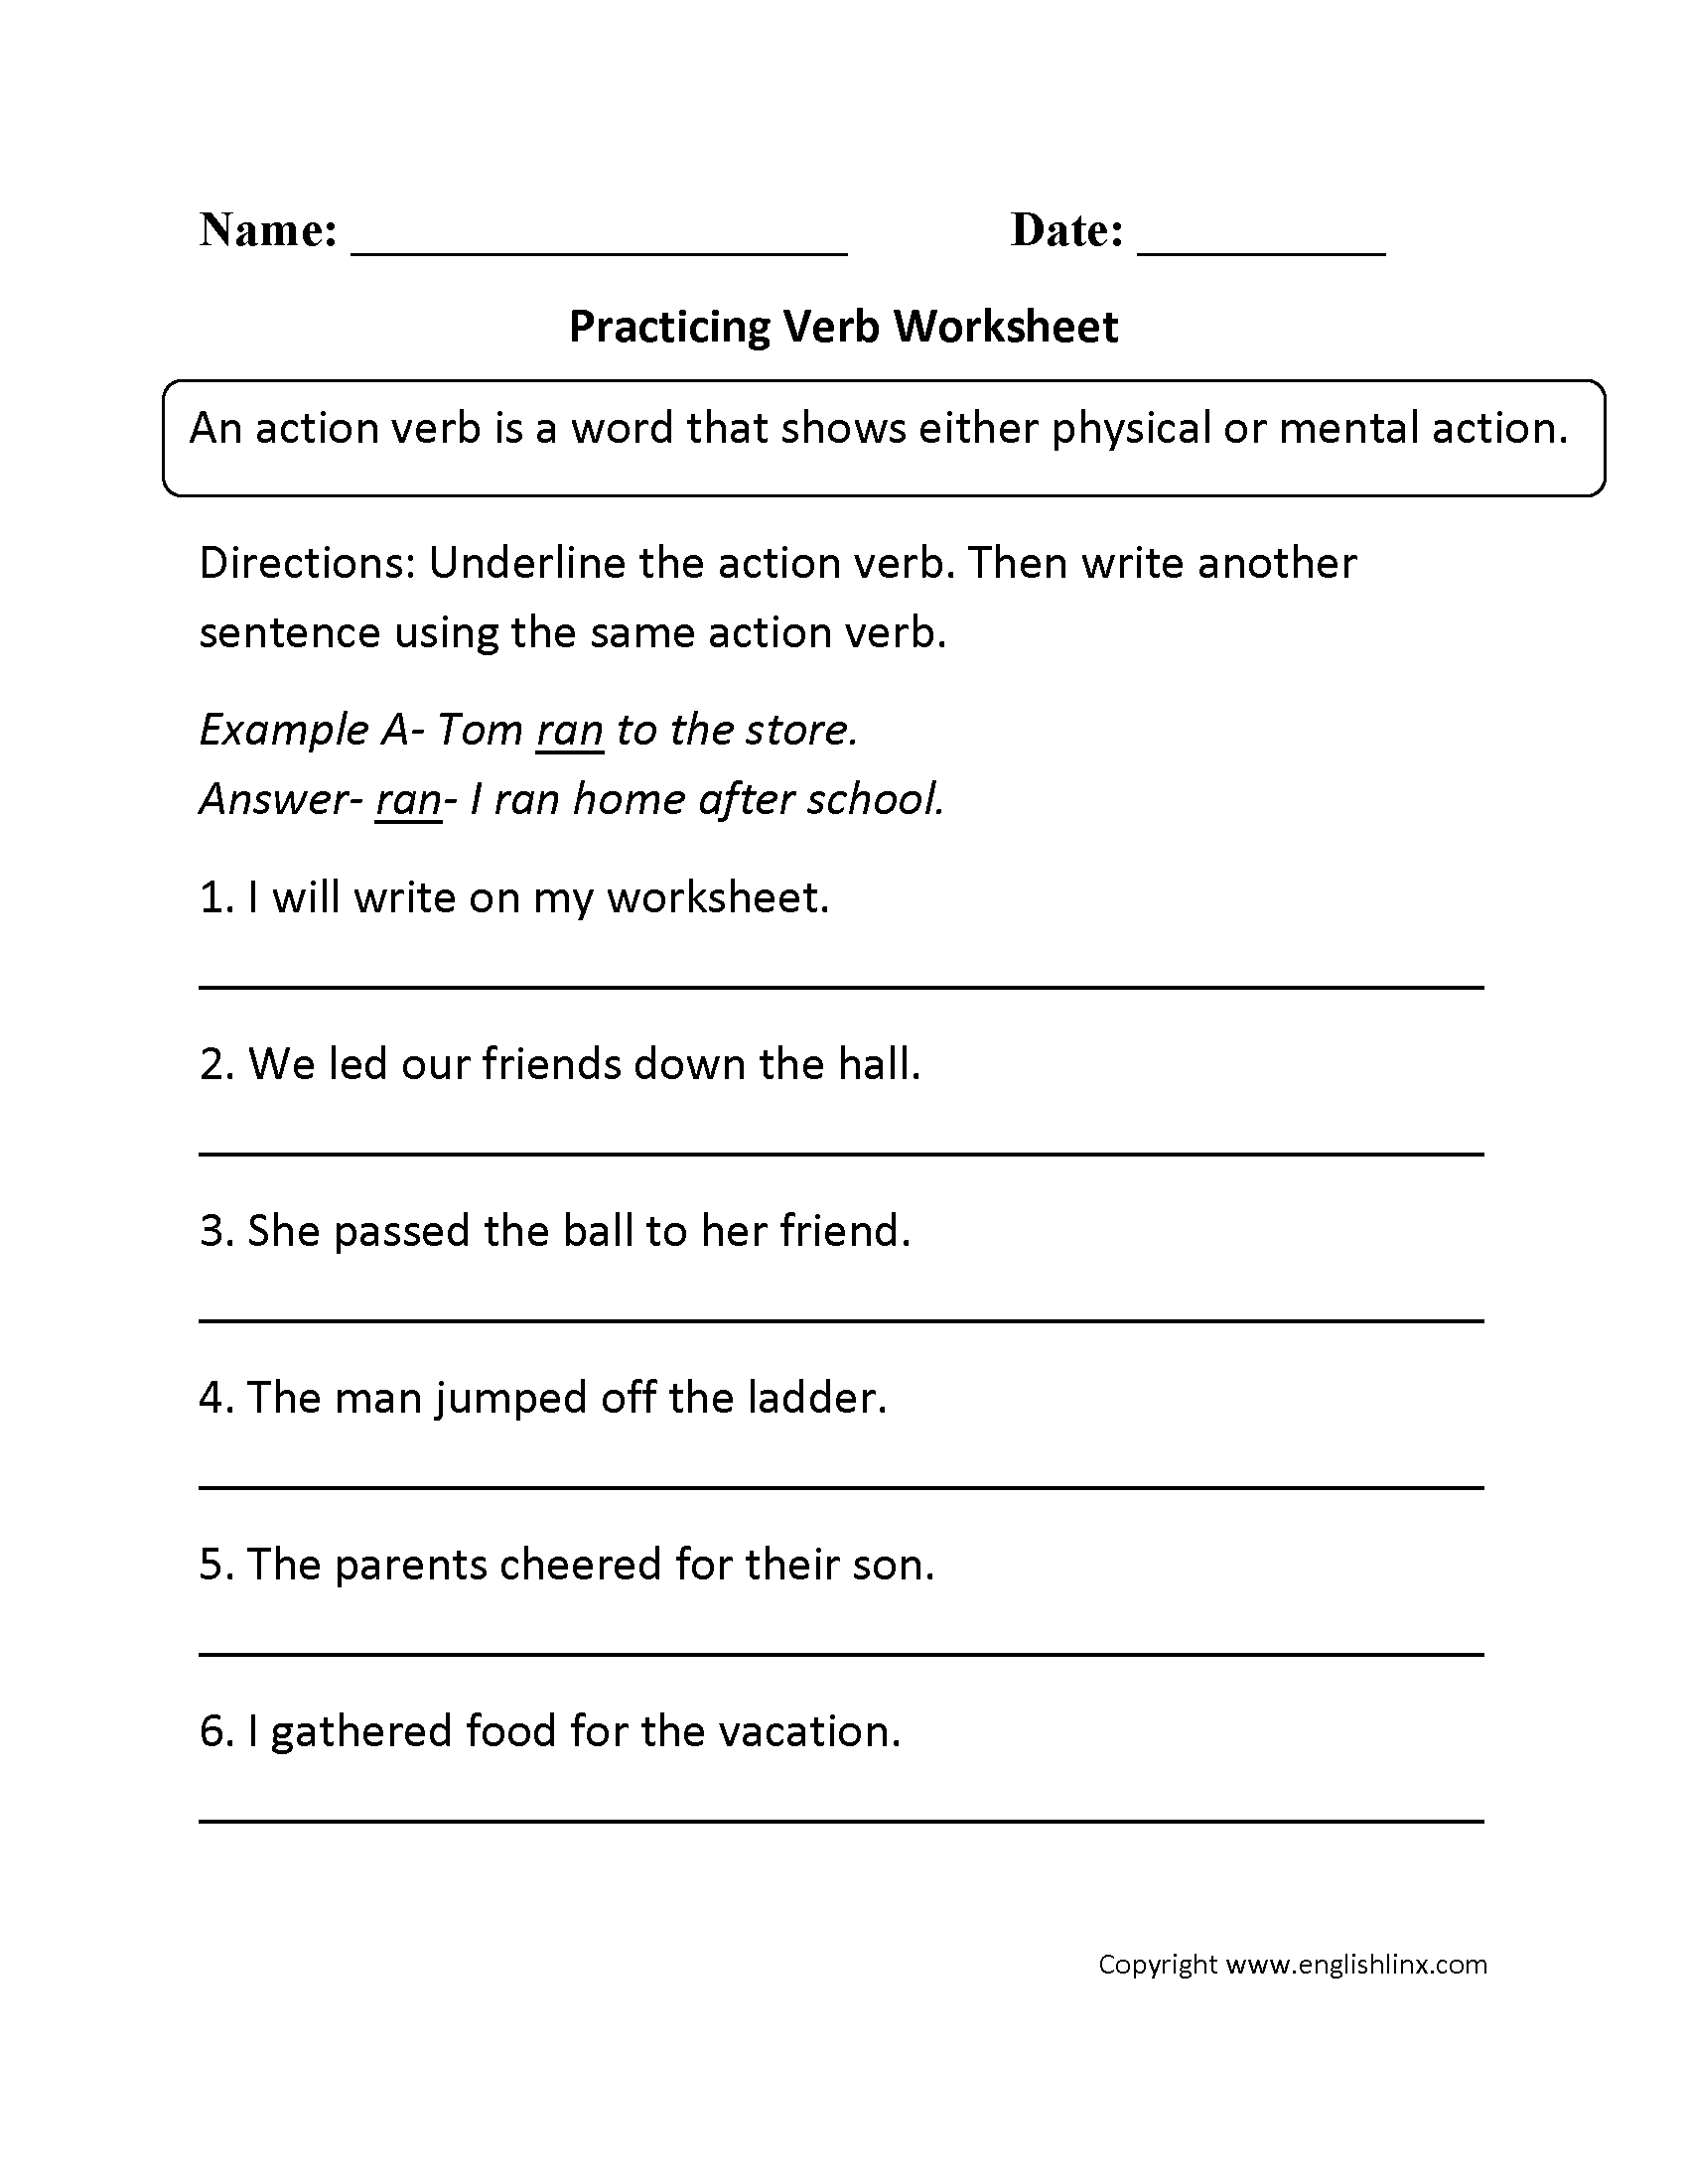 Practicing Verb Worksheet